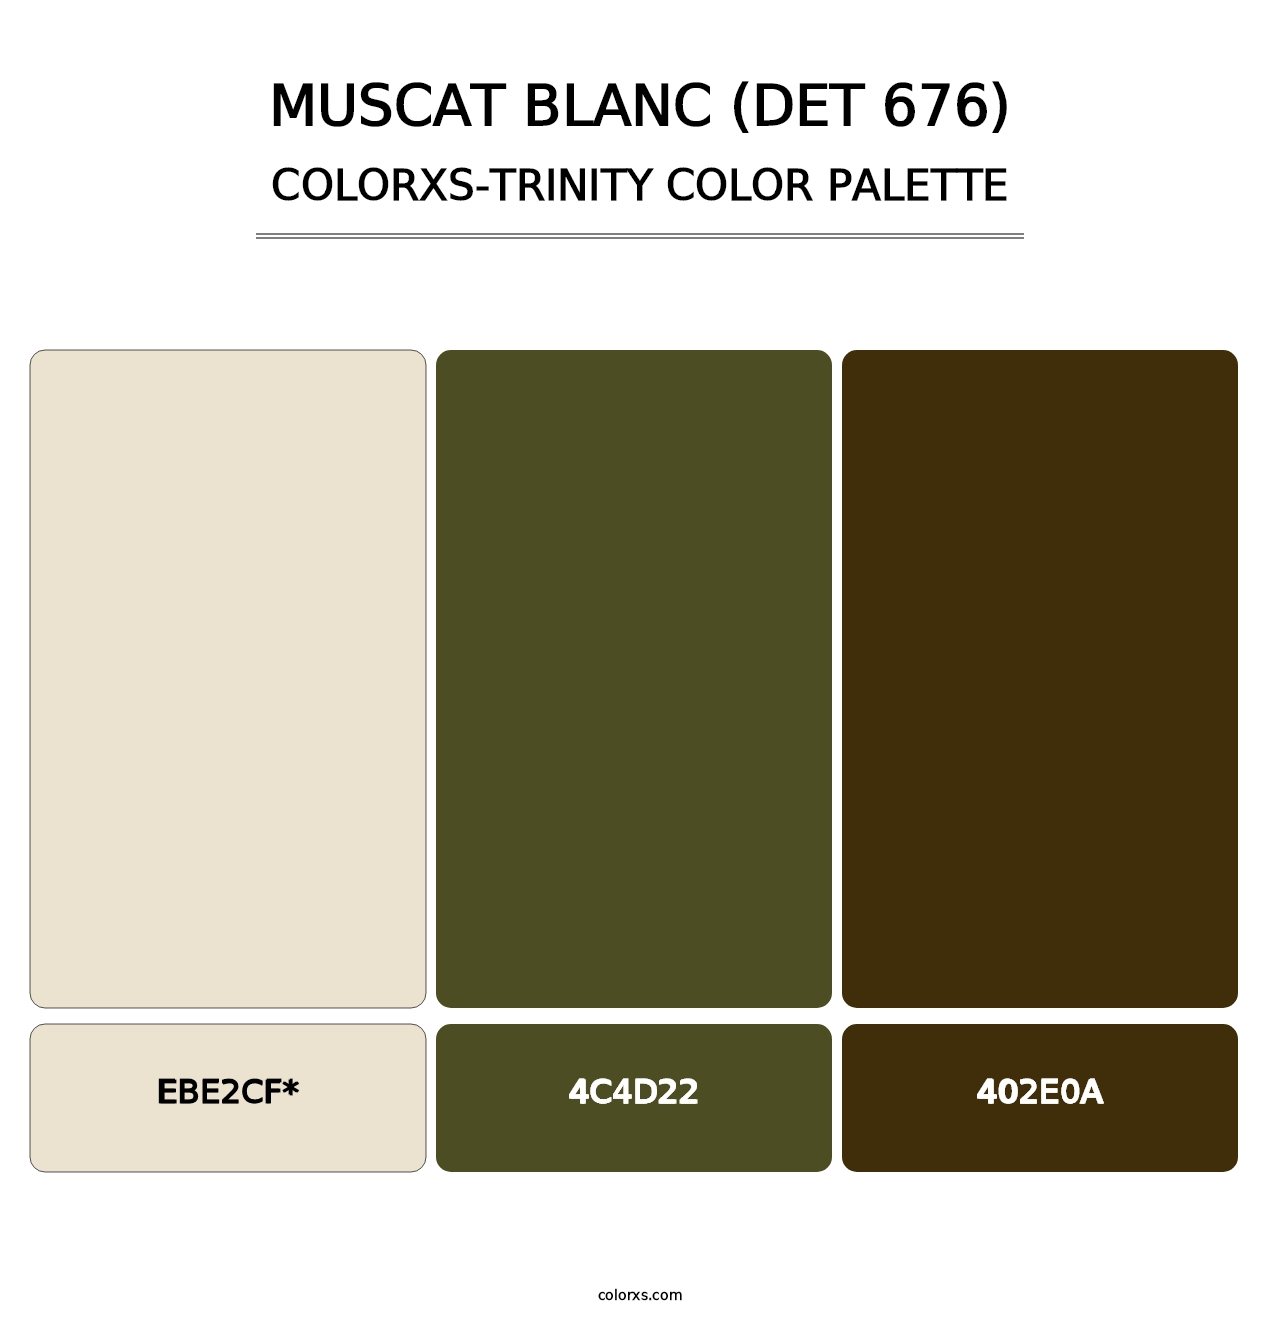 Muscat Blanc (DET 676) - Colorxs Trinity Palette